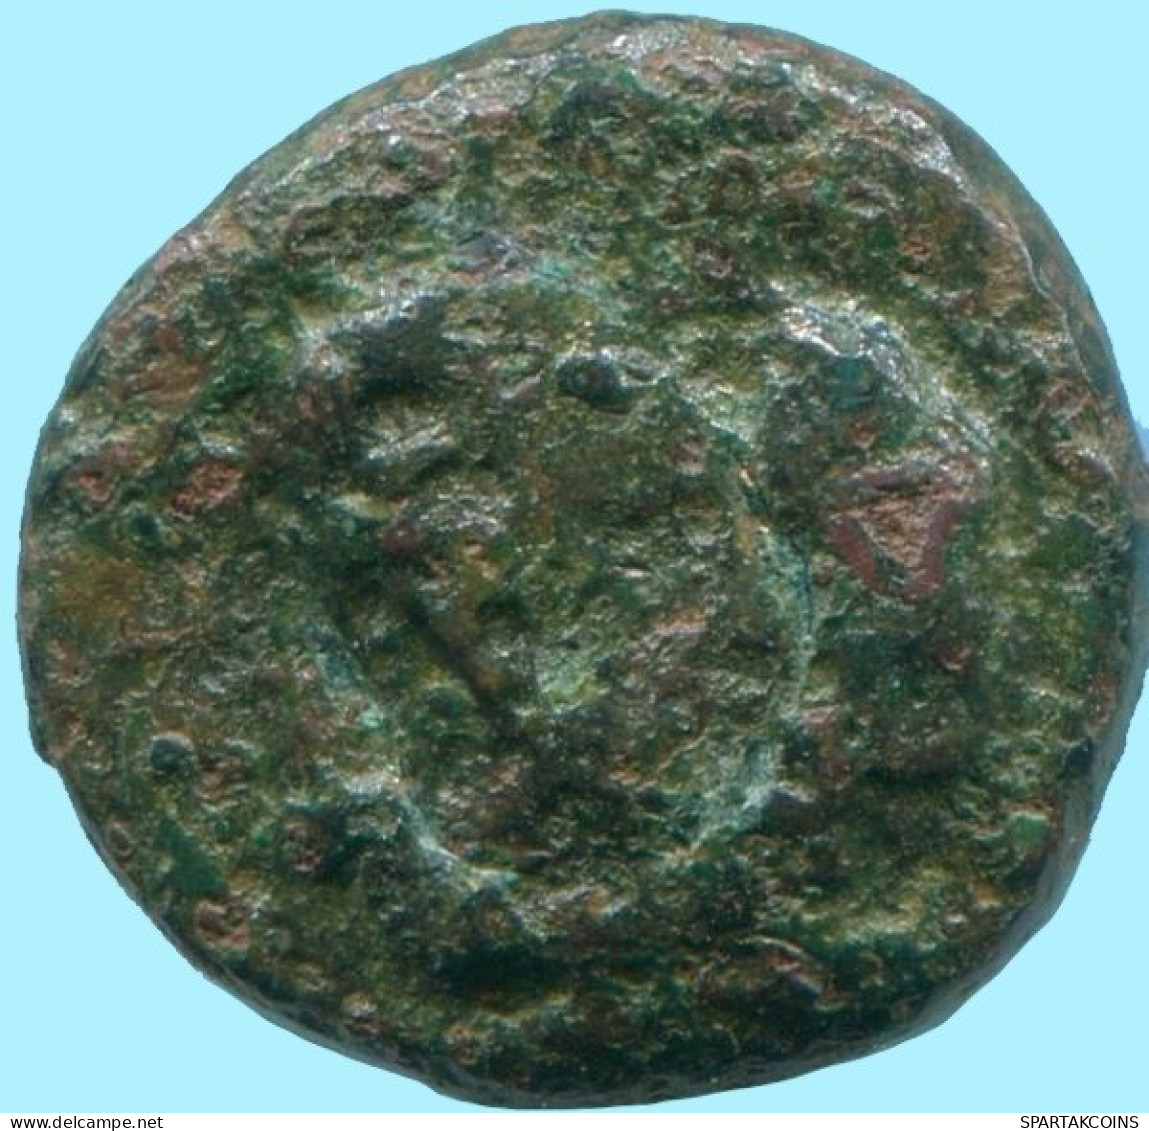 Authentic Original Ancient GREEK Coin 2.41g/13.81mm #ANC13335.8.U.A - Griechische Münzen